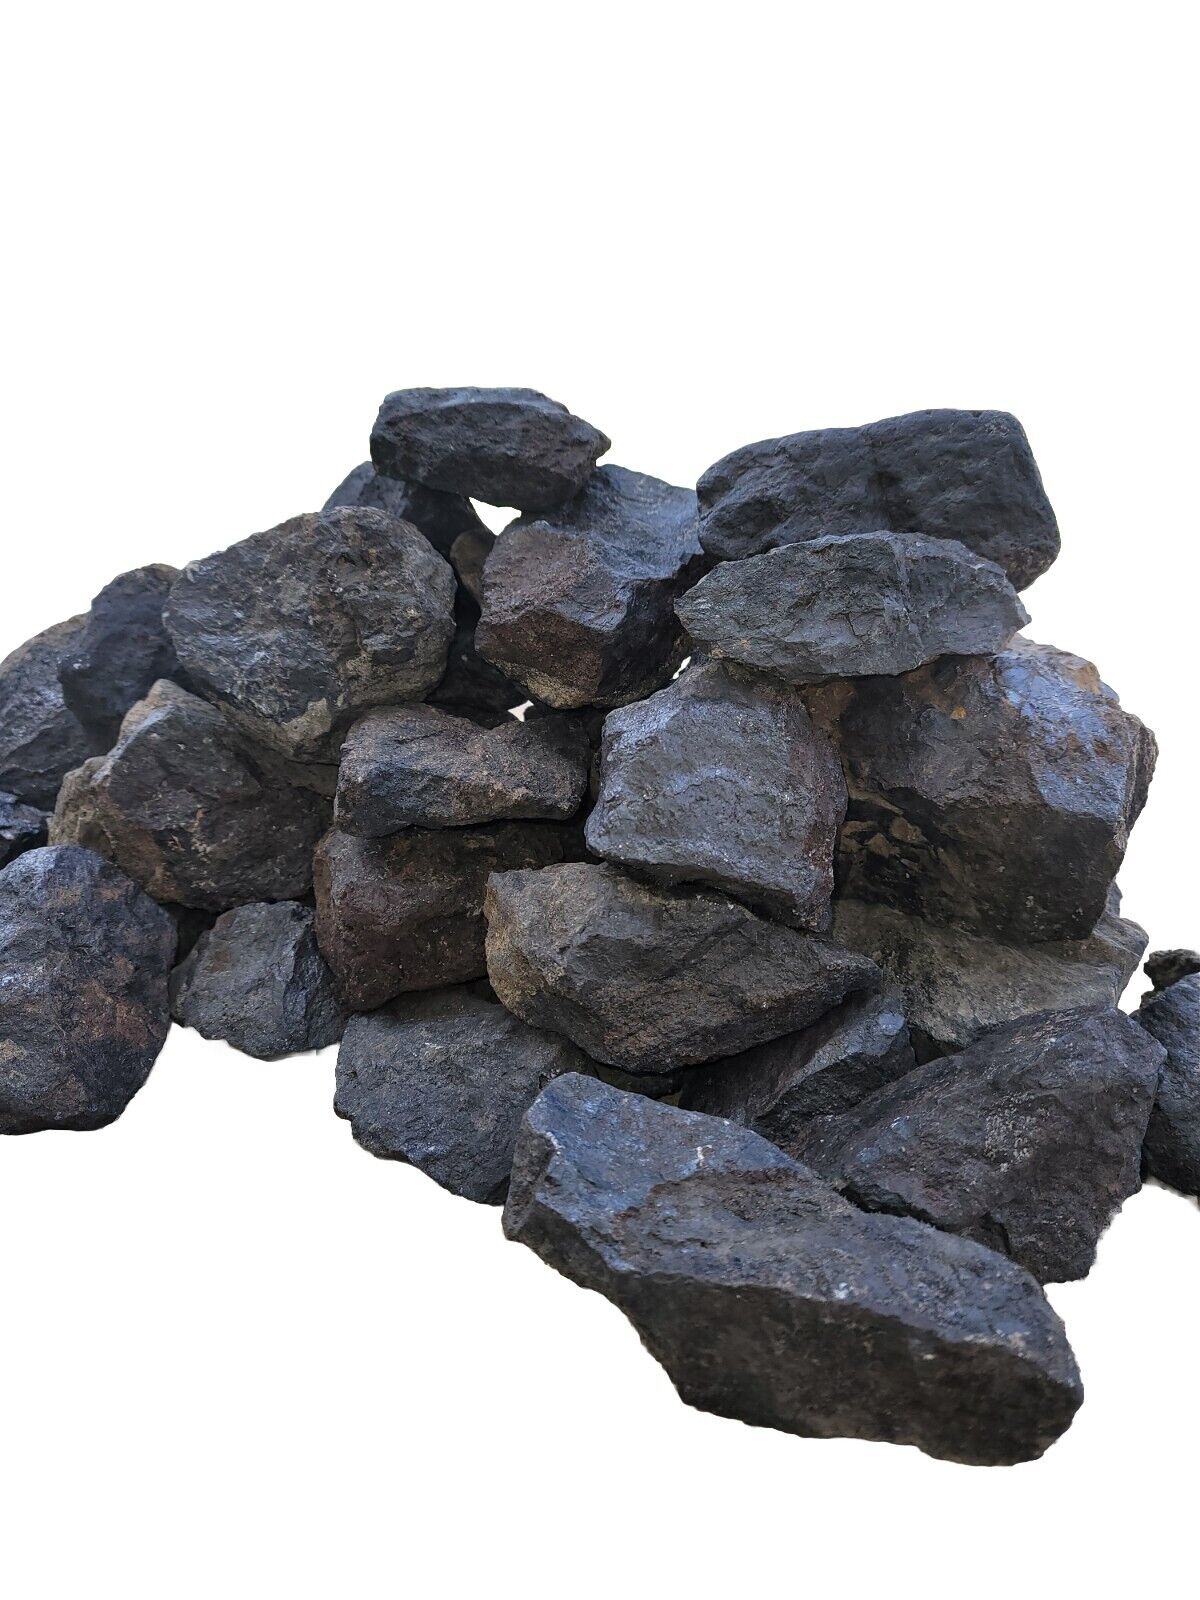 Dark Iron Ore Magnetite Utah Iron Mountain Iron Ore Rocks 7-10lb Health Benefits